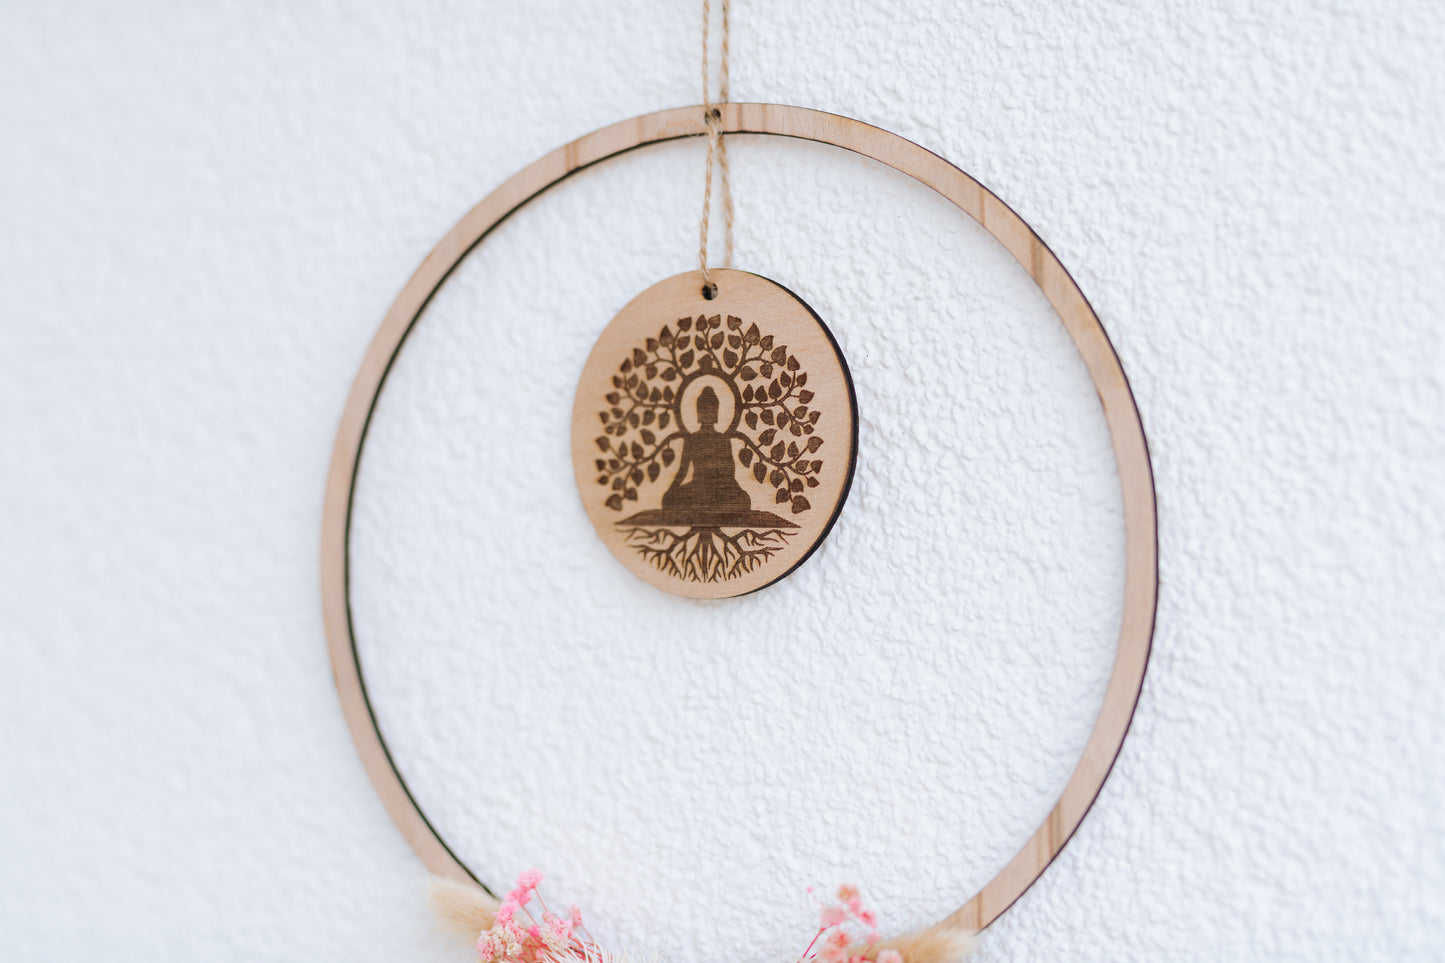 Spirituelle Deko aus Holz - Rustikale Dekoration mit spiriutellem Symbol "BUDDHA" und Lebensbaum mit rosa Blumen - Lokale Herstellung